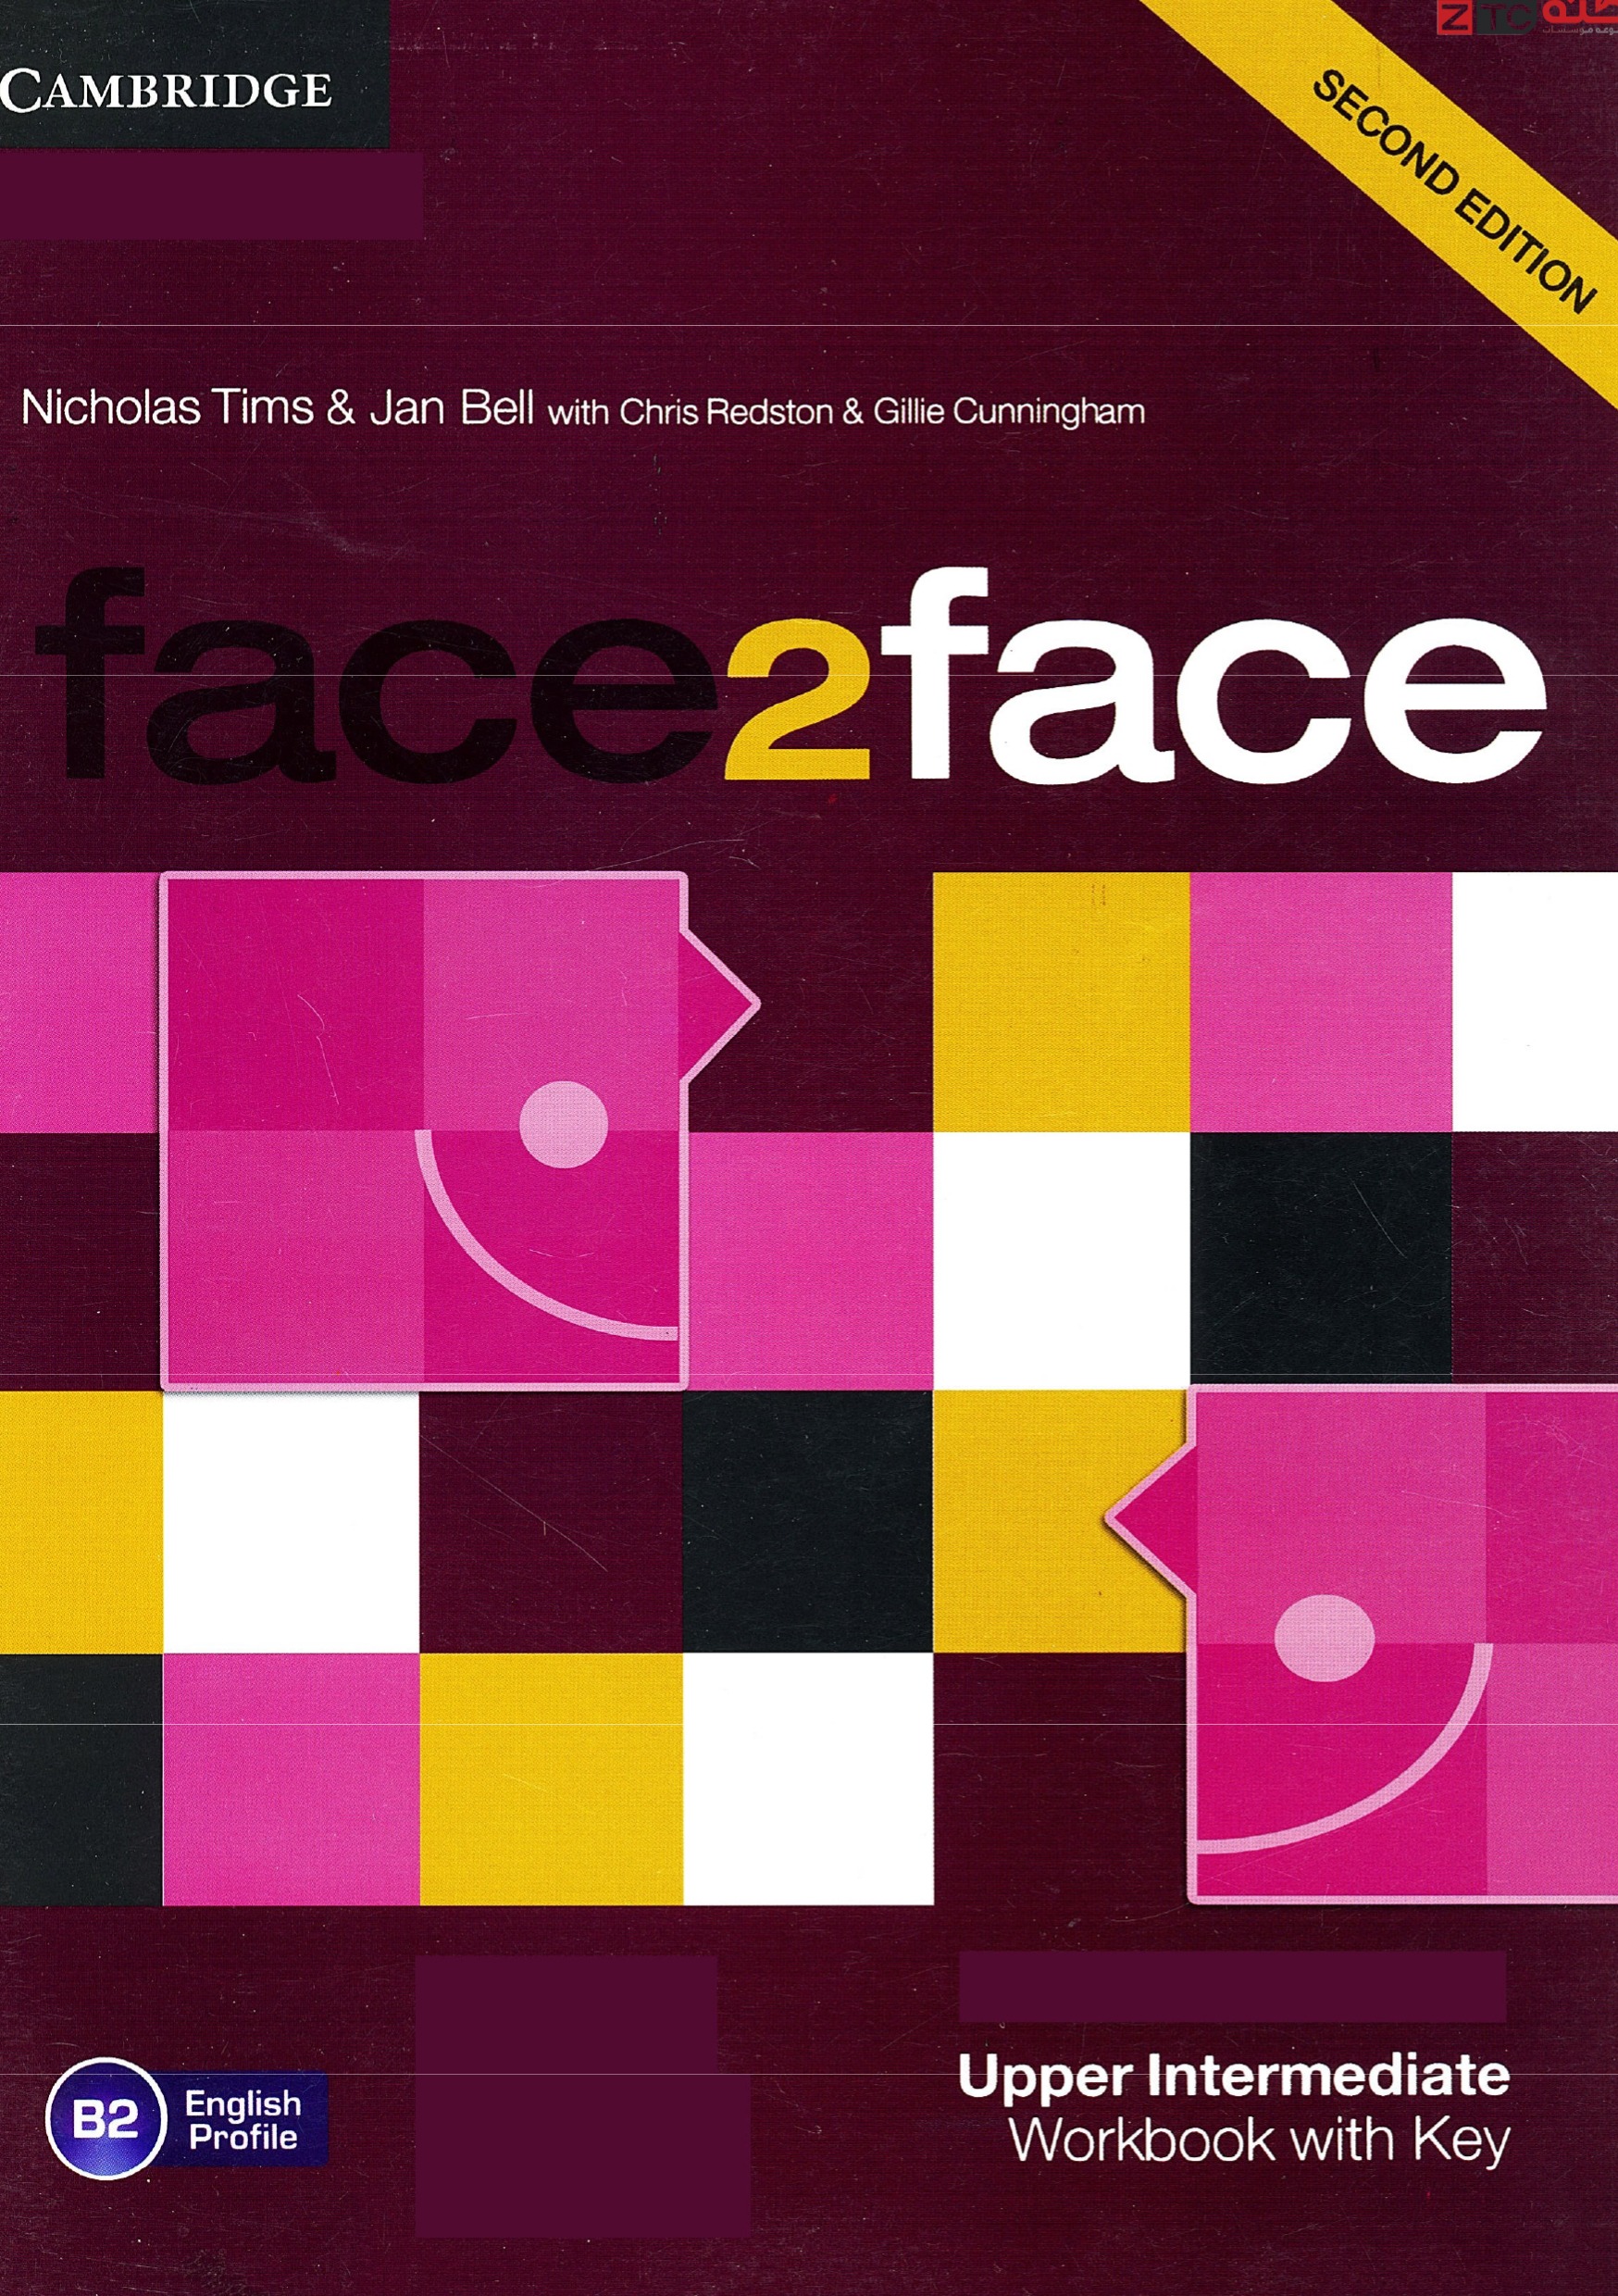 Face 2 Face Upper intermediate Work Book